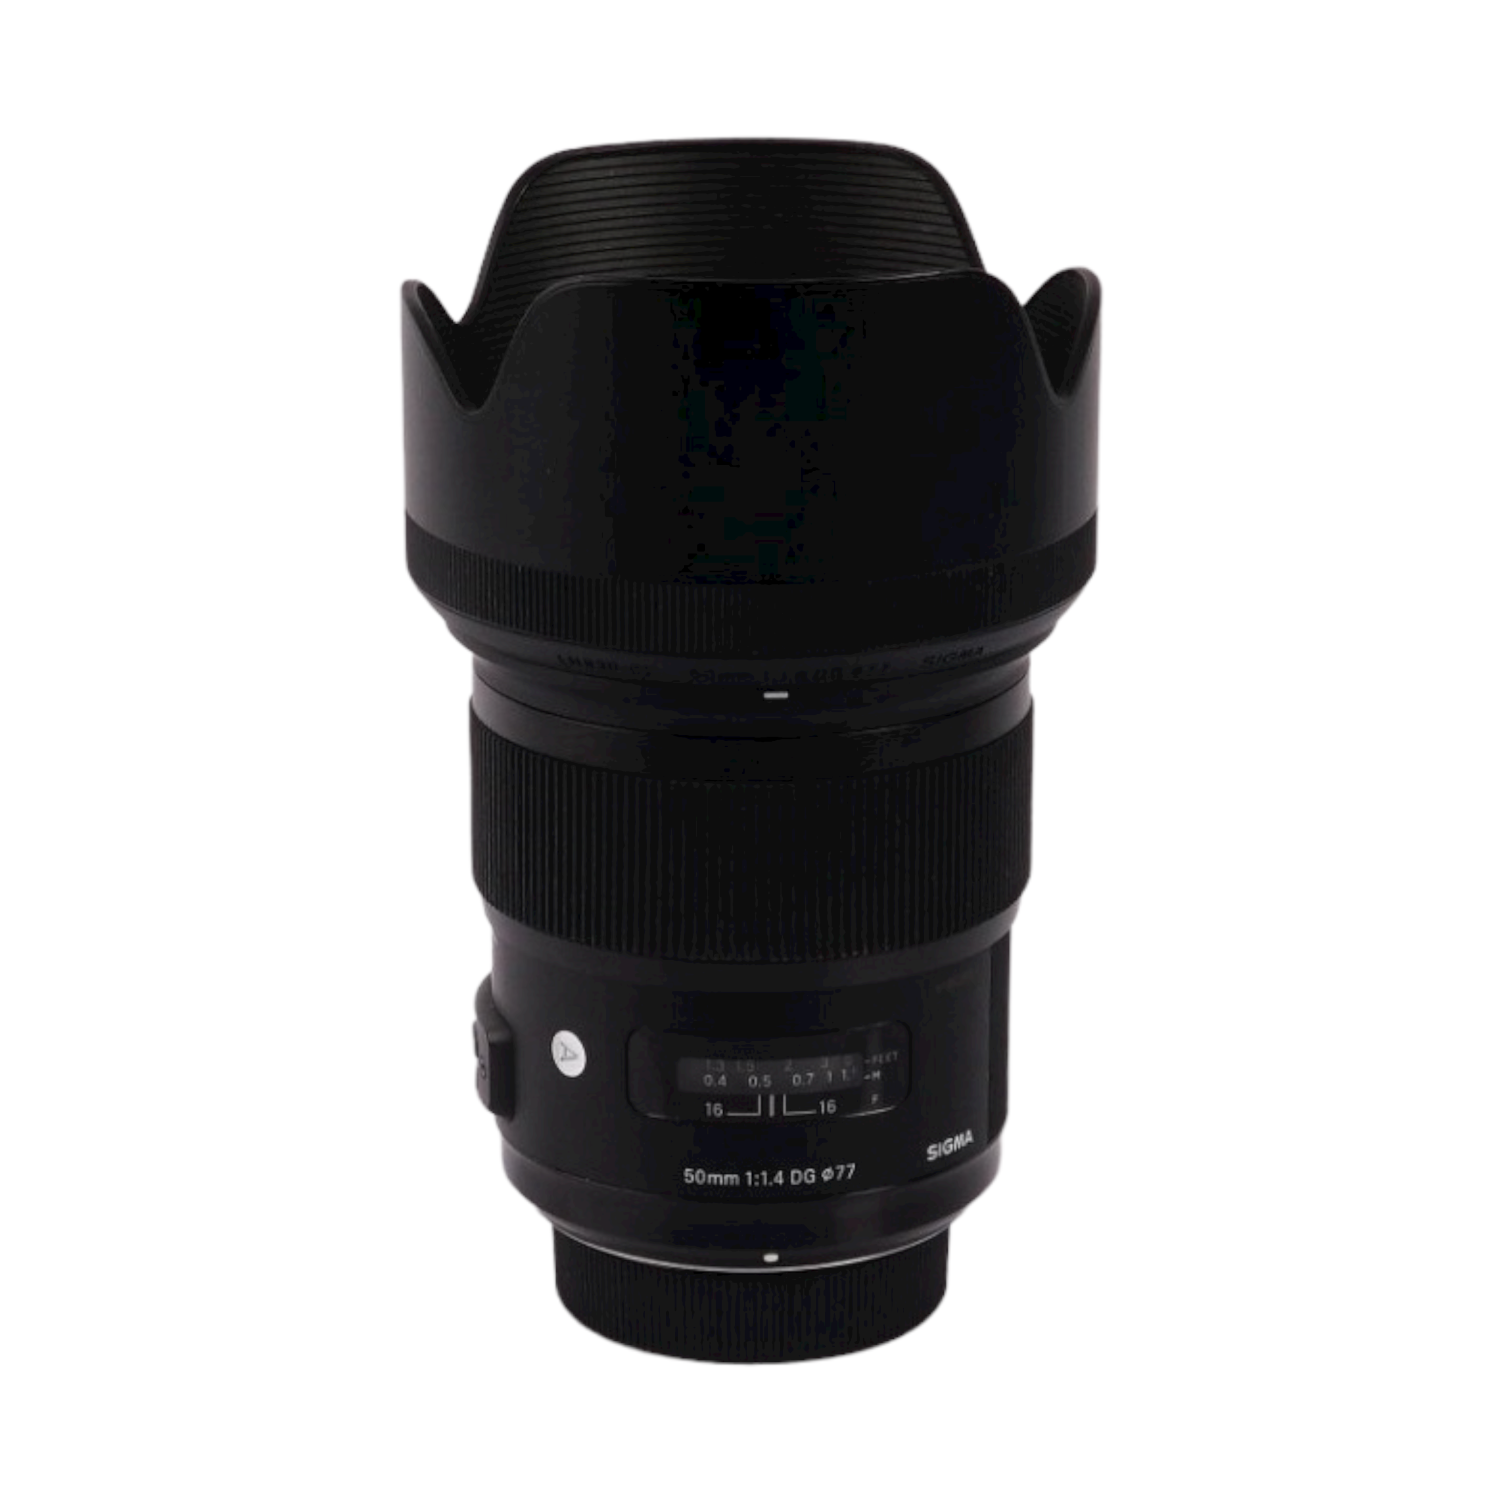 Refurbished (Good) - Sigma 50mm F/1.4 Art DG HSM Portrait Lens - Nikon F-Mount Lens Full-Frame